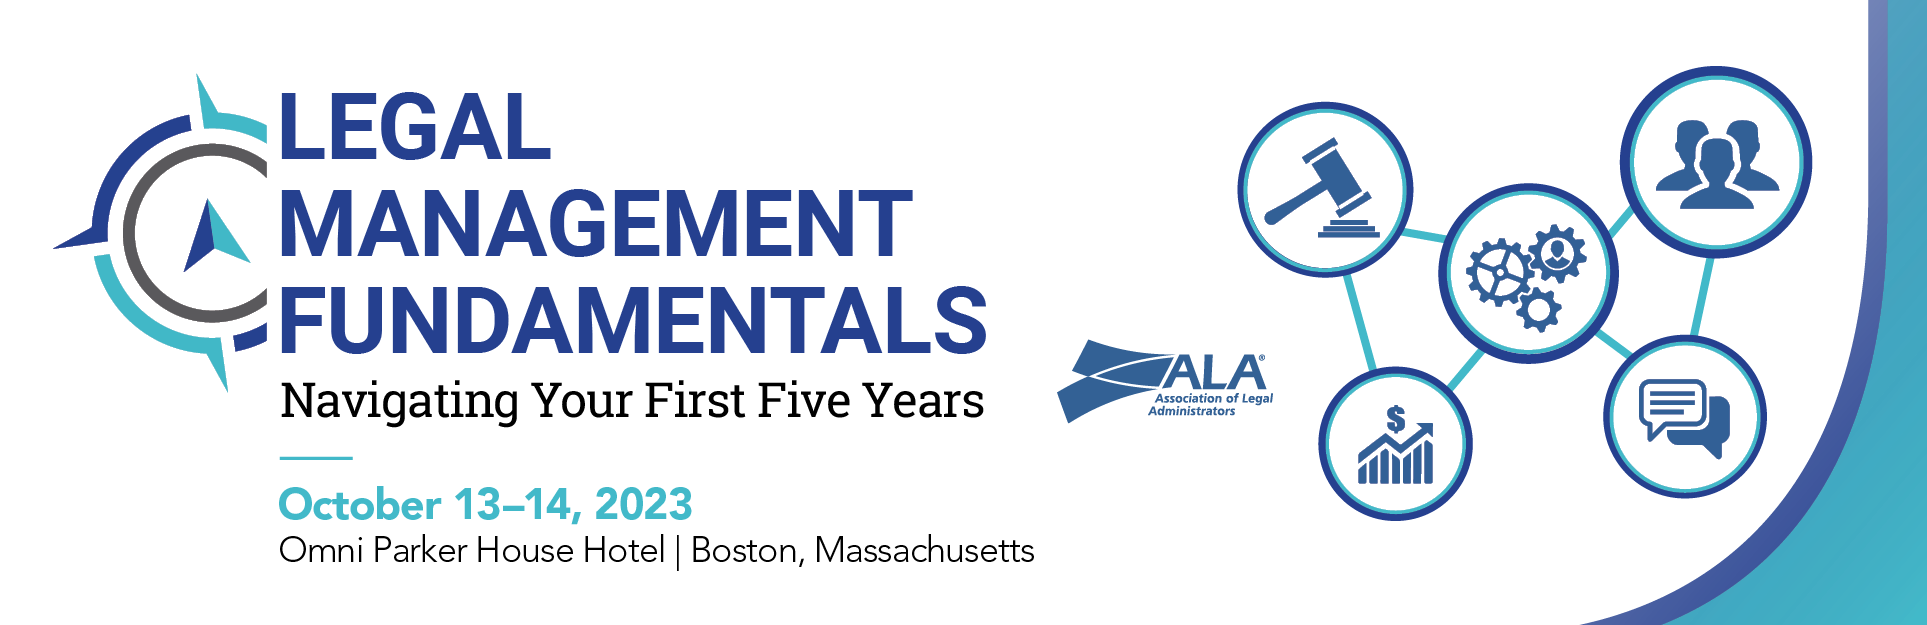 ALA’s Legal Management Fundamentals